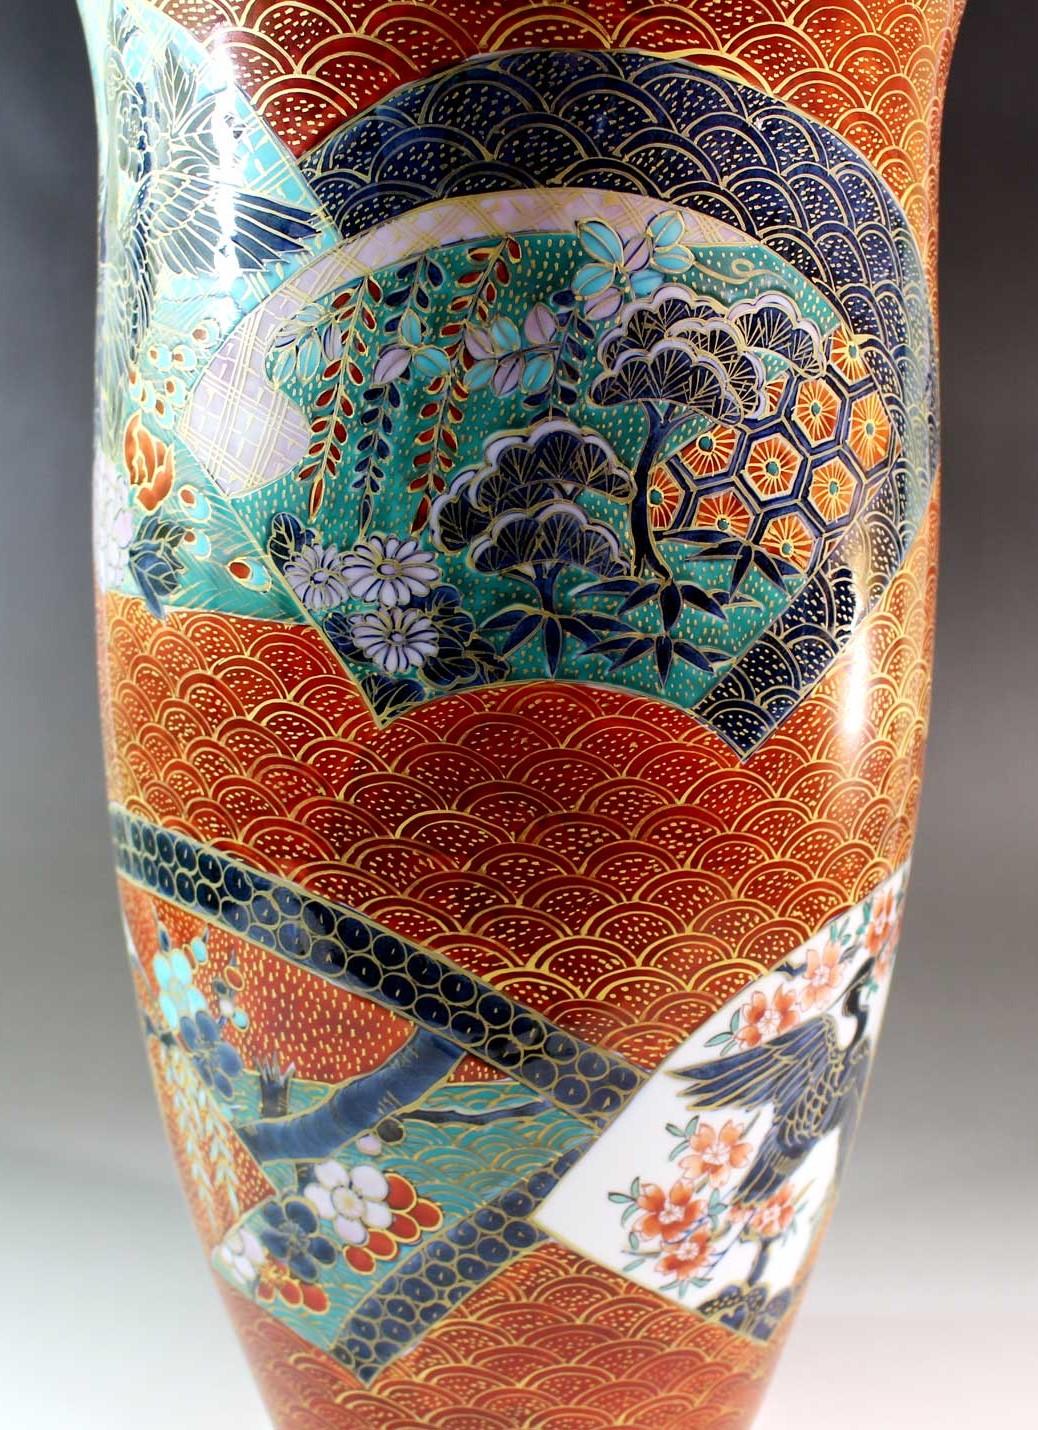 Exceptionnel grand vase en porcelaine japonaise, doré au platine à l'intérieur et peint à la main en rouge sur l'extérieur du corps aux formes saisissantes. Un chef-d'œuvre du maître porcelainier très respecté de la région d'Imari-Arita au Japon. En